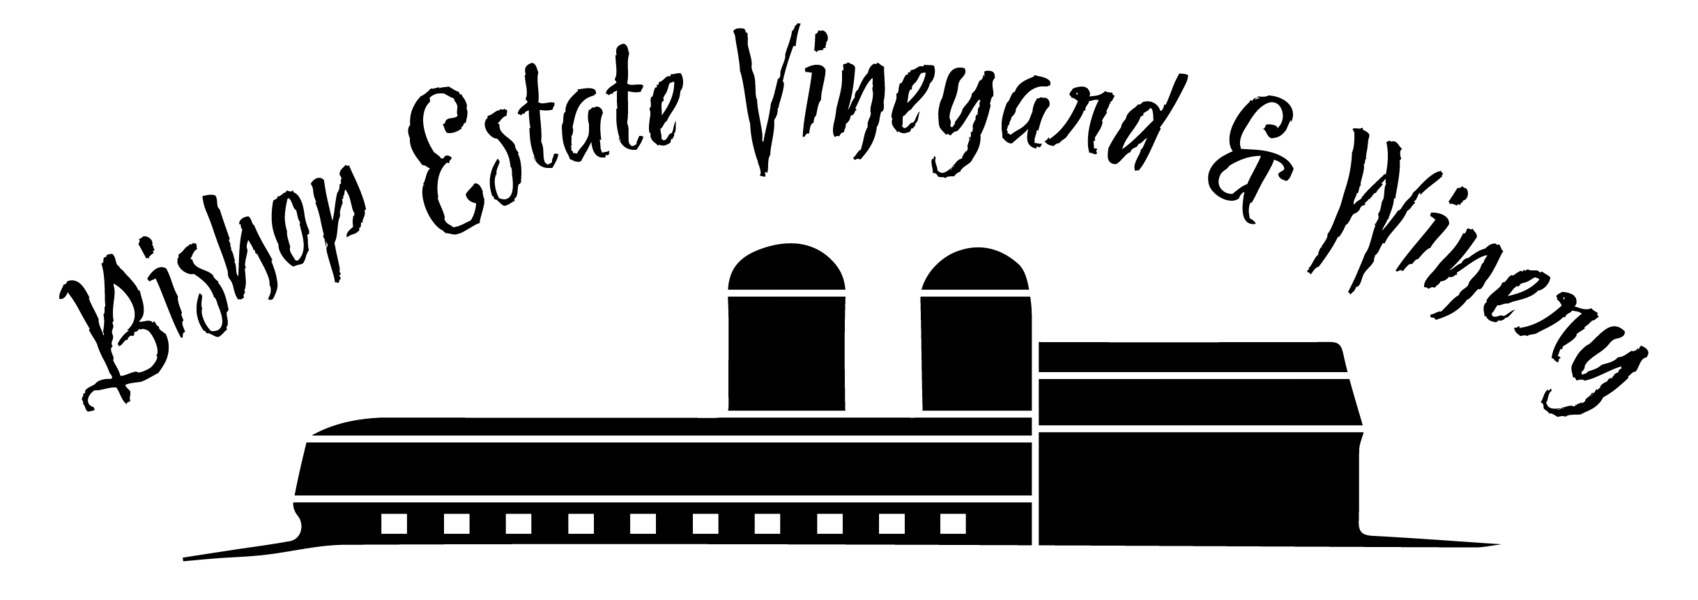 Bishop Vineyard Logo.jpg